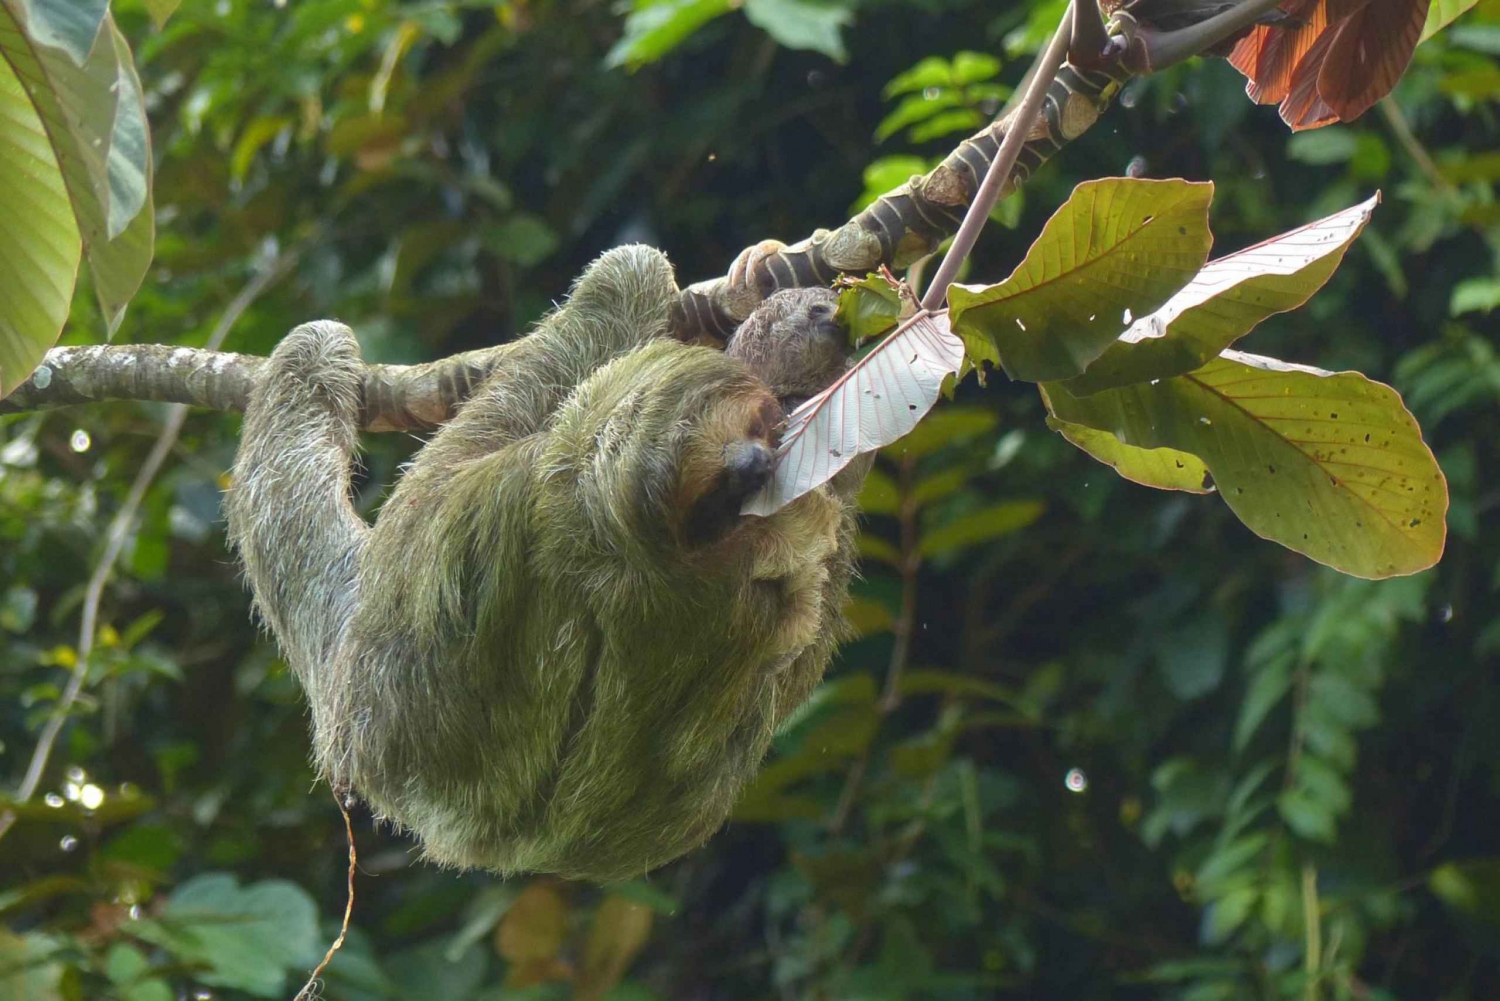 Sloth Watching Tour i Rio Celeste Costa Rica